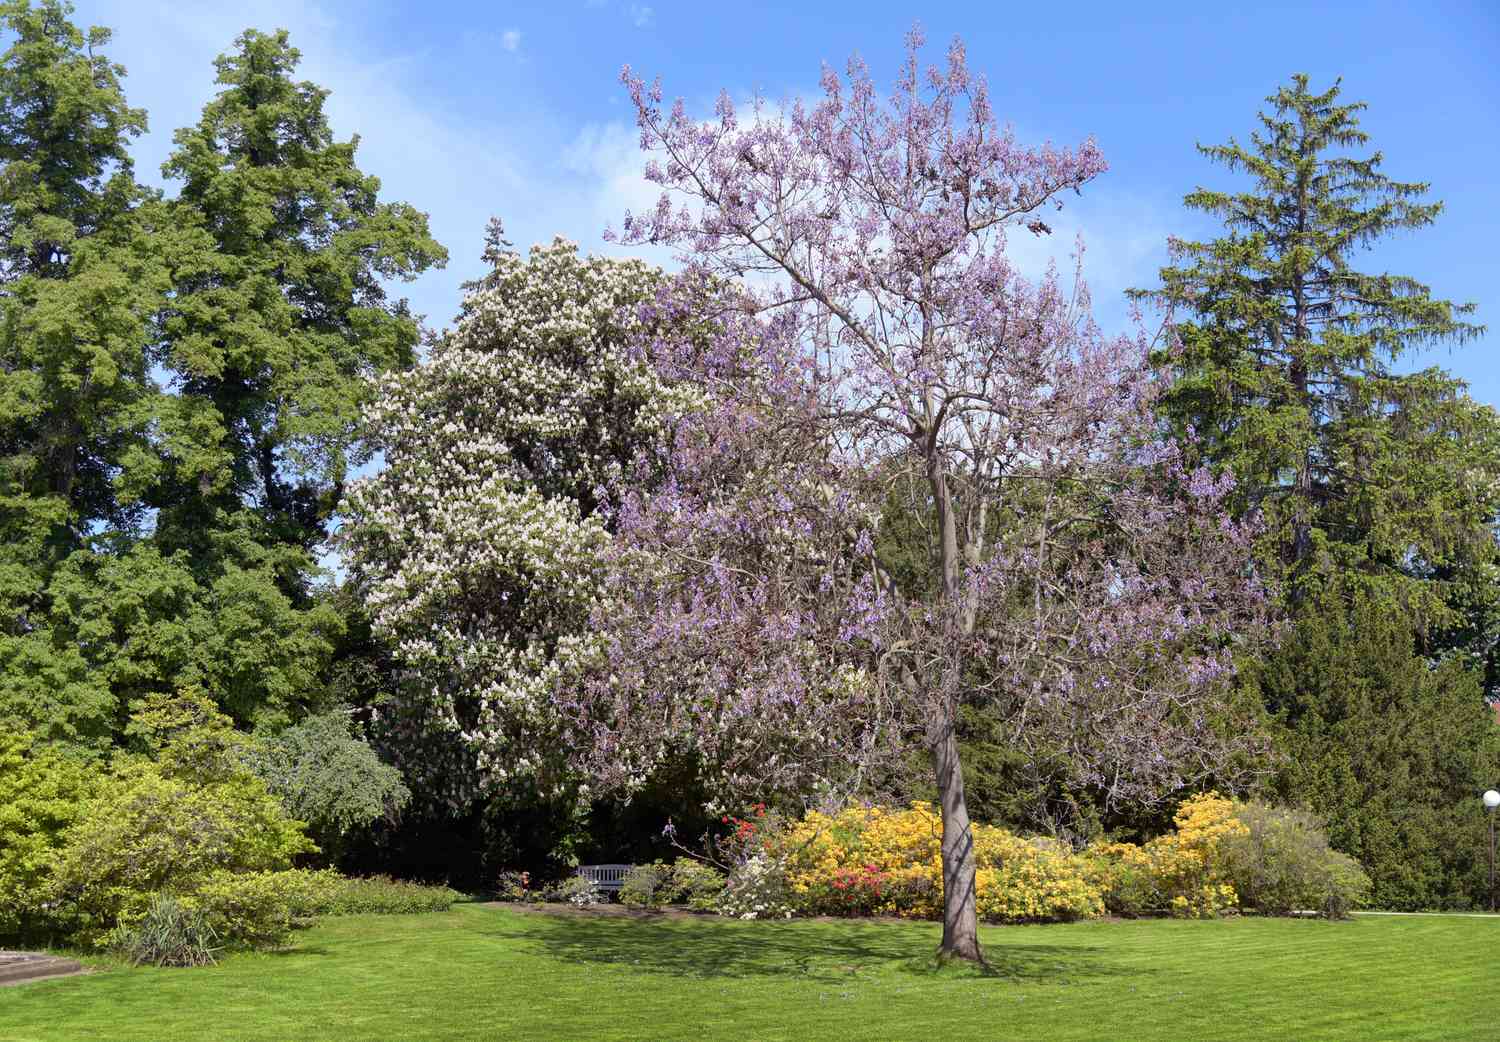 Árvore da imperatriz com flores roxas claras nos galhos no meio do jardim